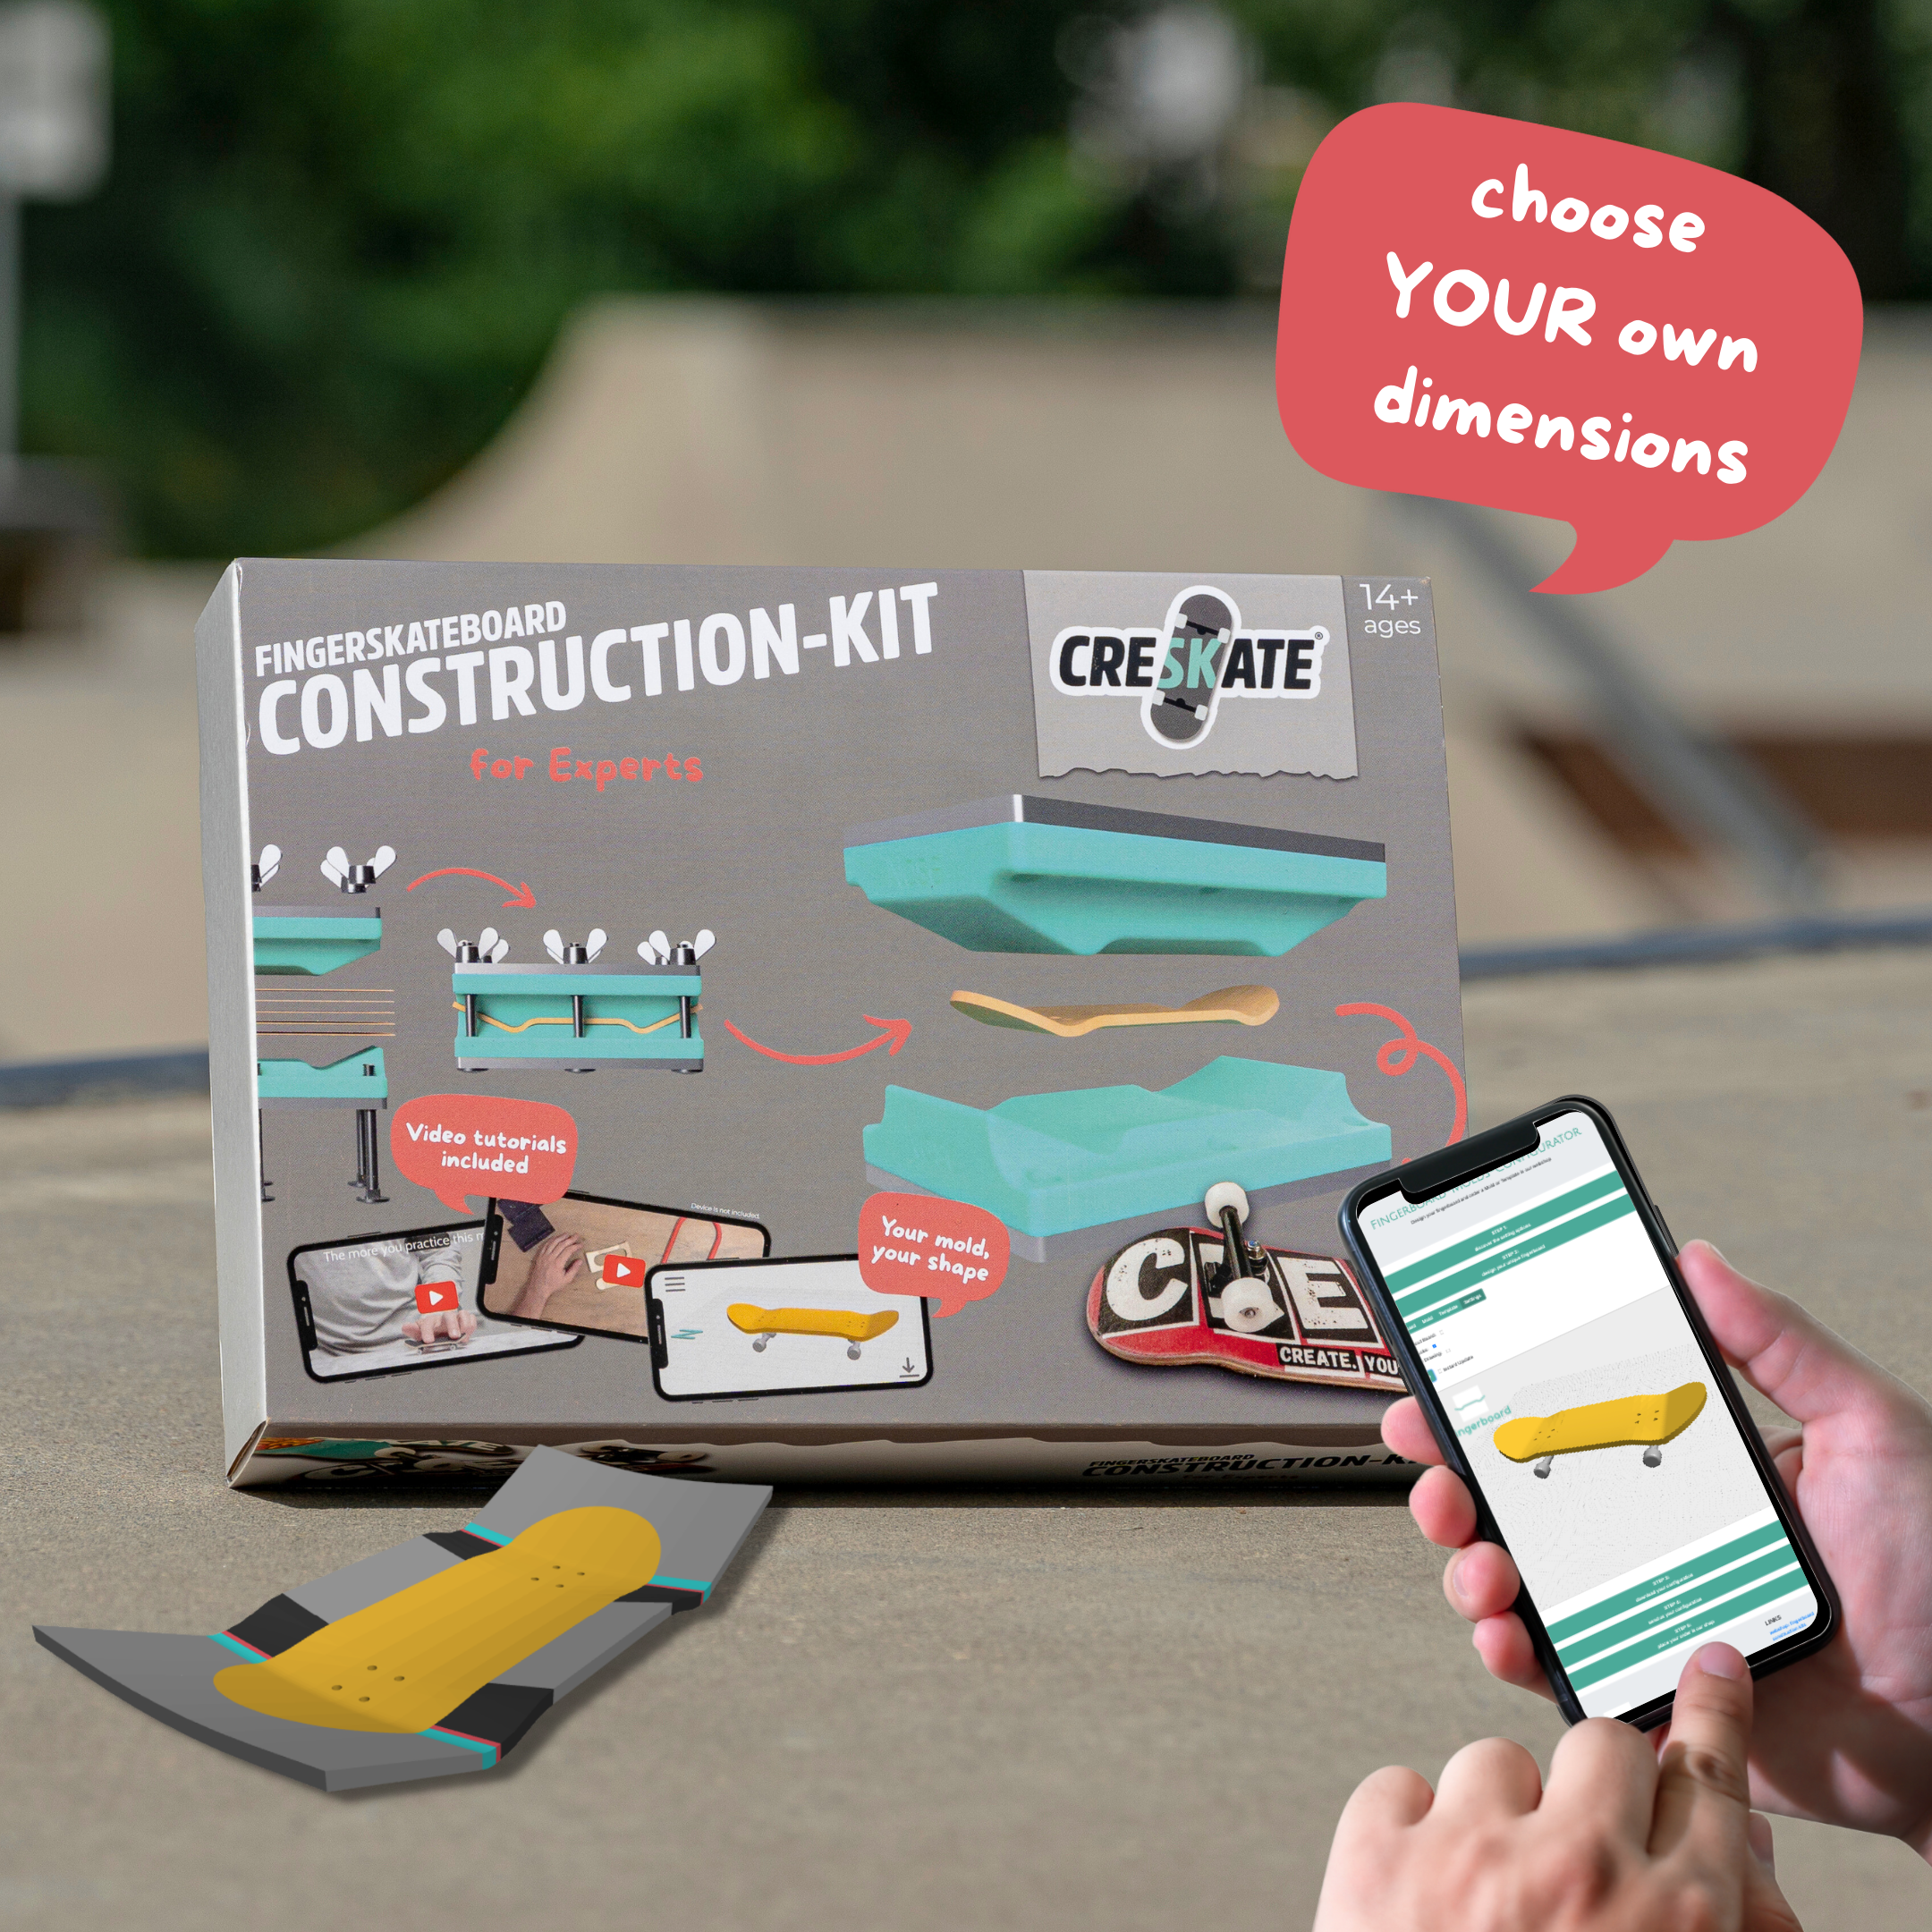 Fingerskateboard Construction Kit - for Experts